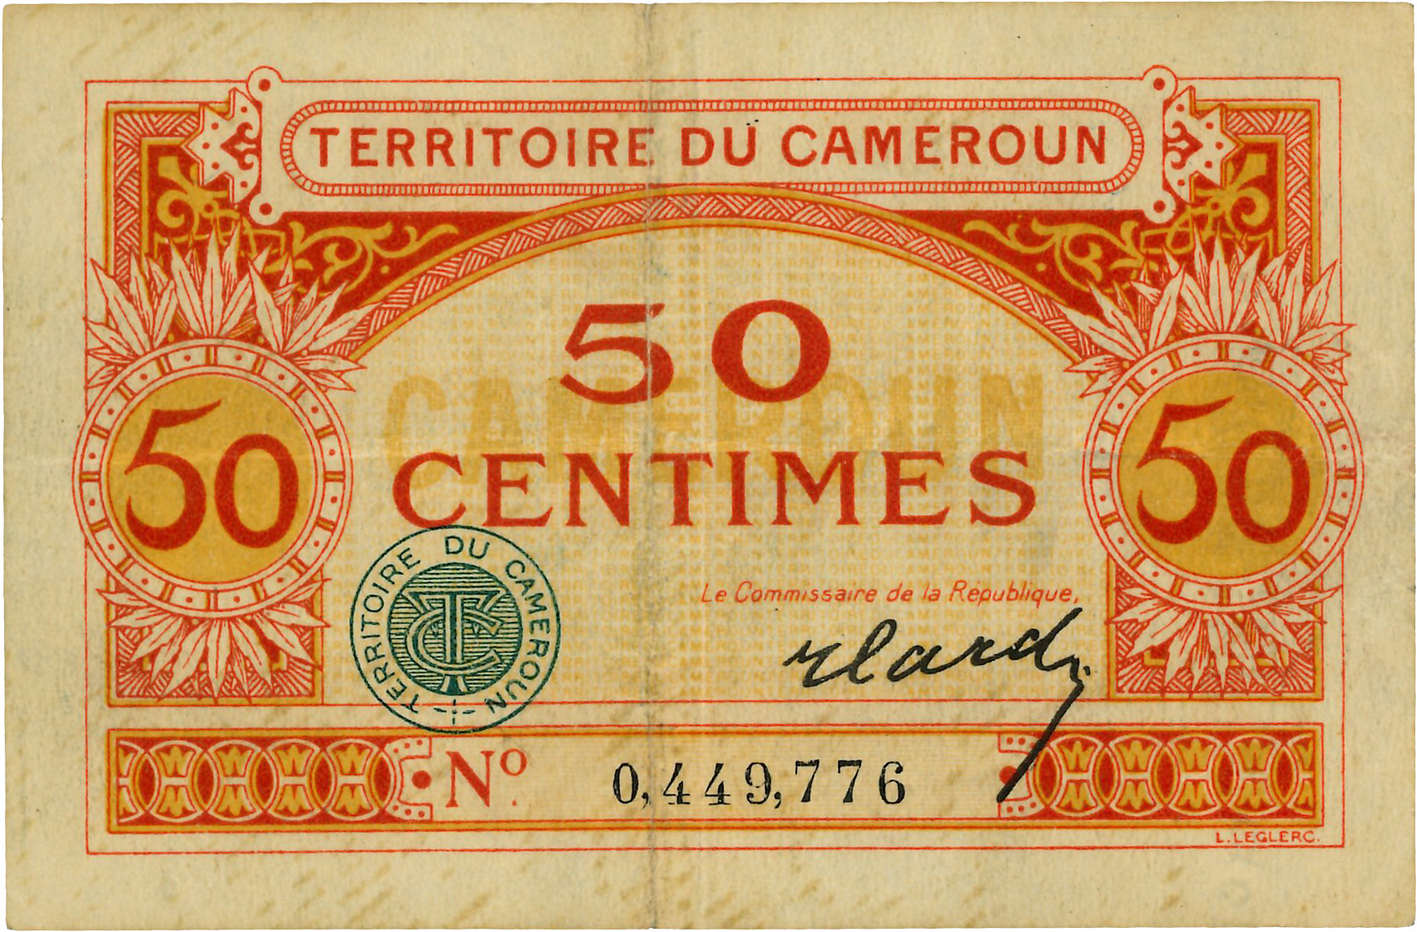 50 Centimes CAMEROUN  1922 P.04 TTB+